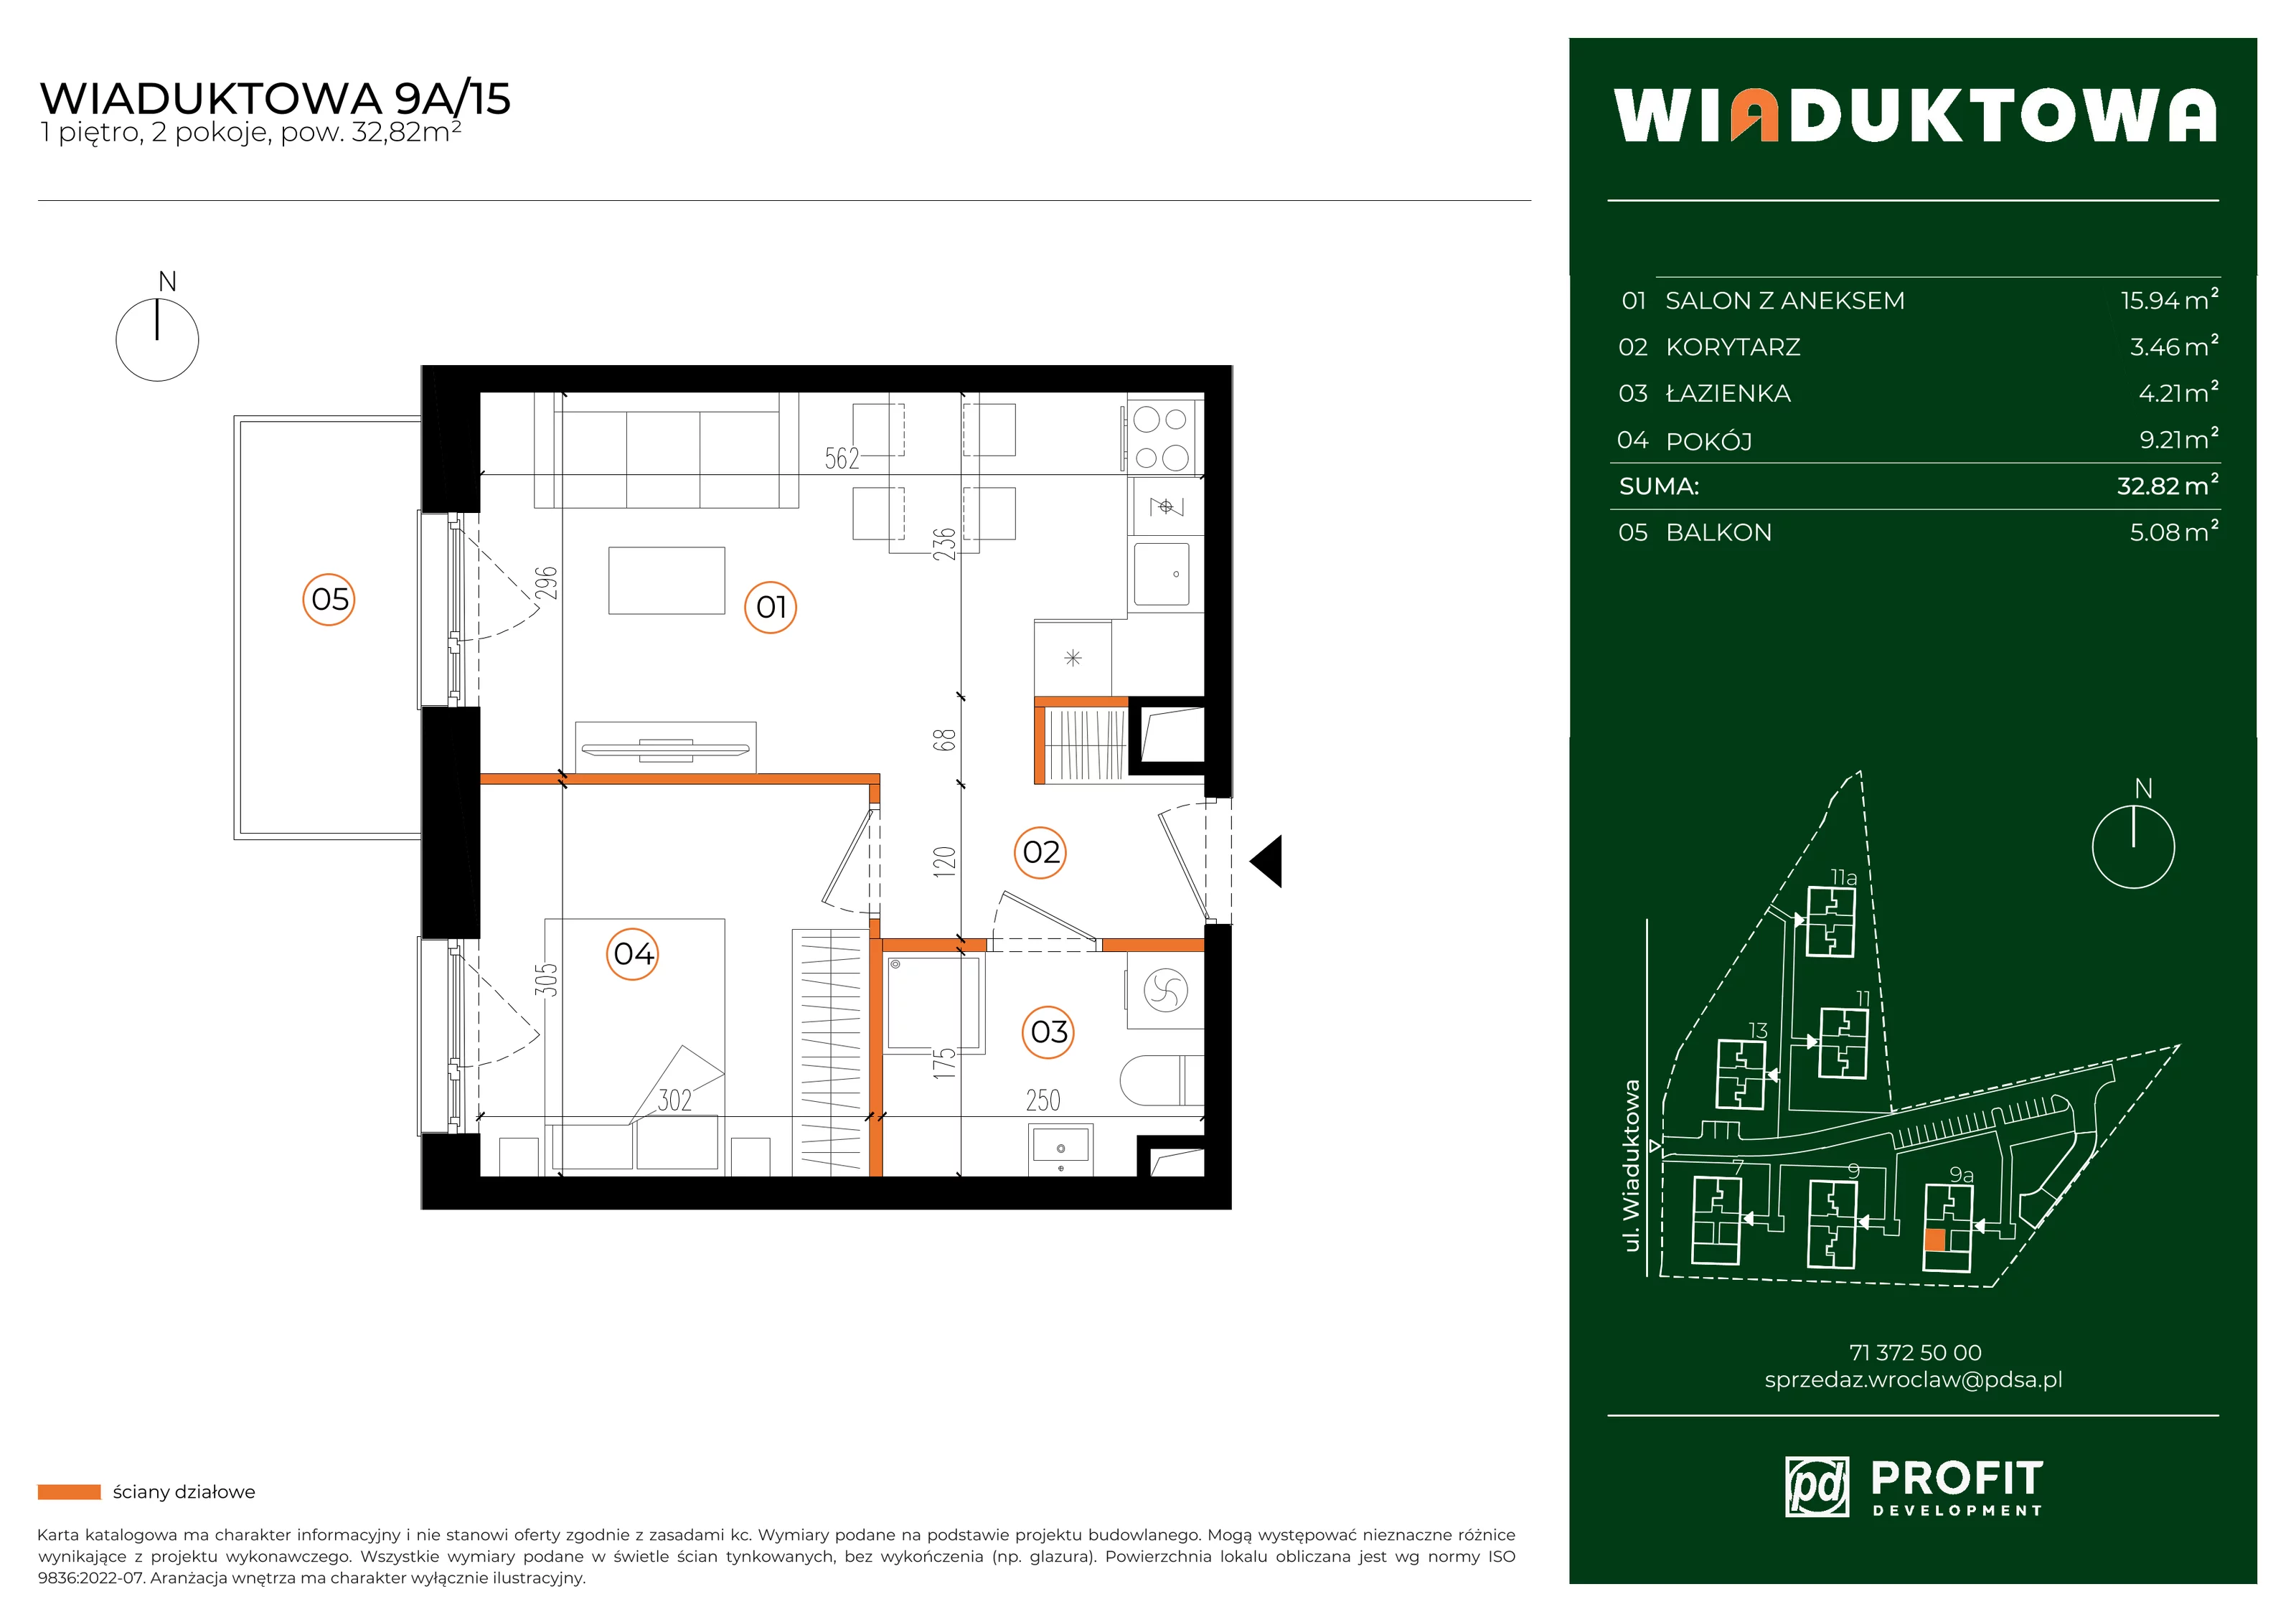 Mieszkanie 32,82 m², piętro 1, oferta nr WI/9A/15, Wiaduktowa, Wrocław, Krzyki-Partynice, Krzyki, ul. Wiaduktowa